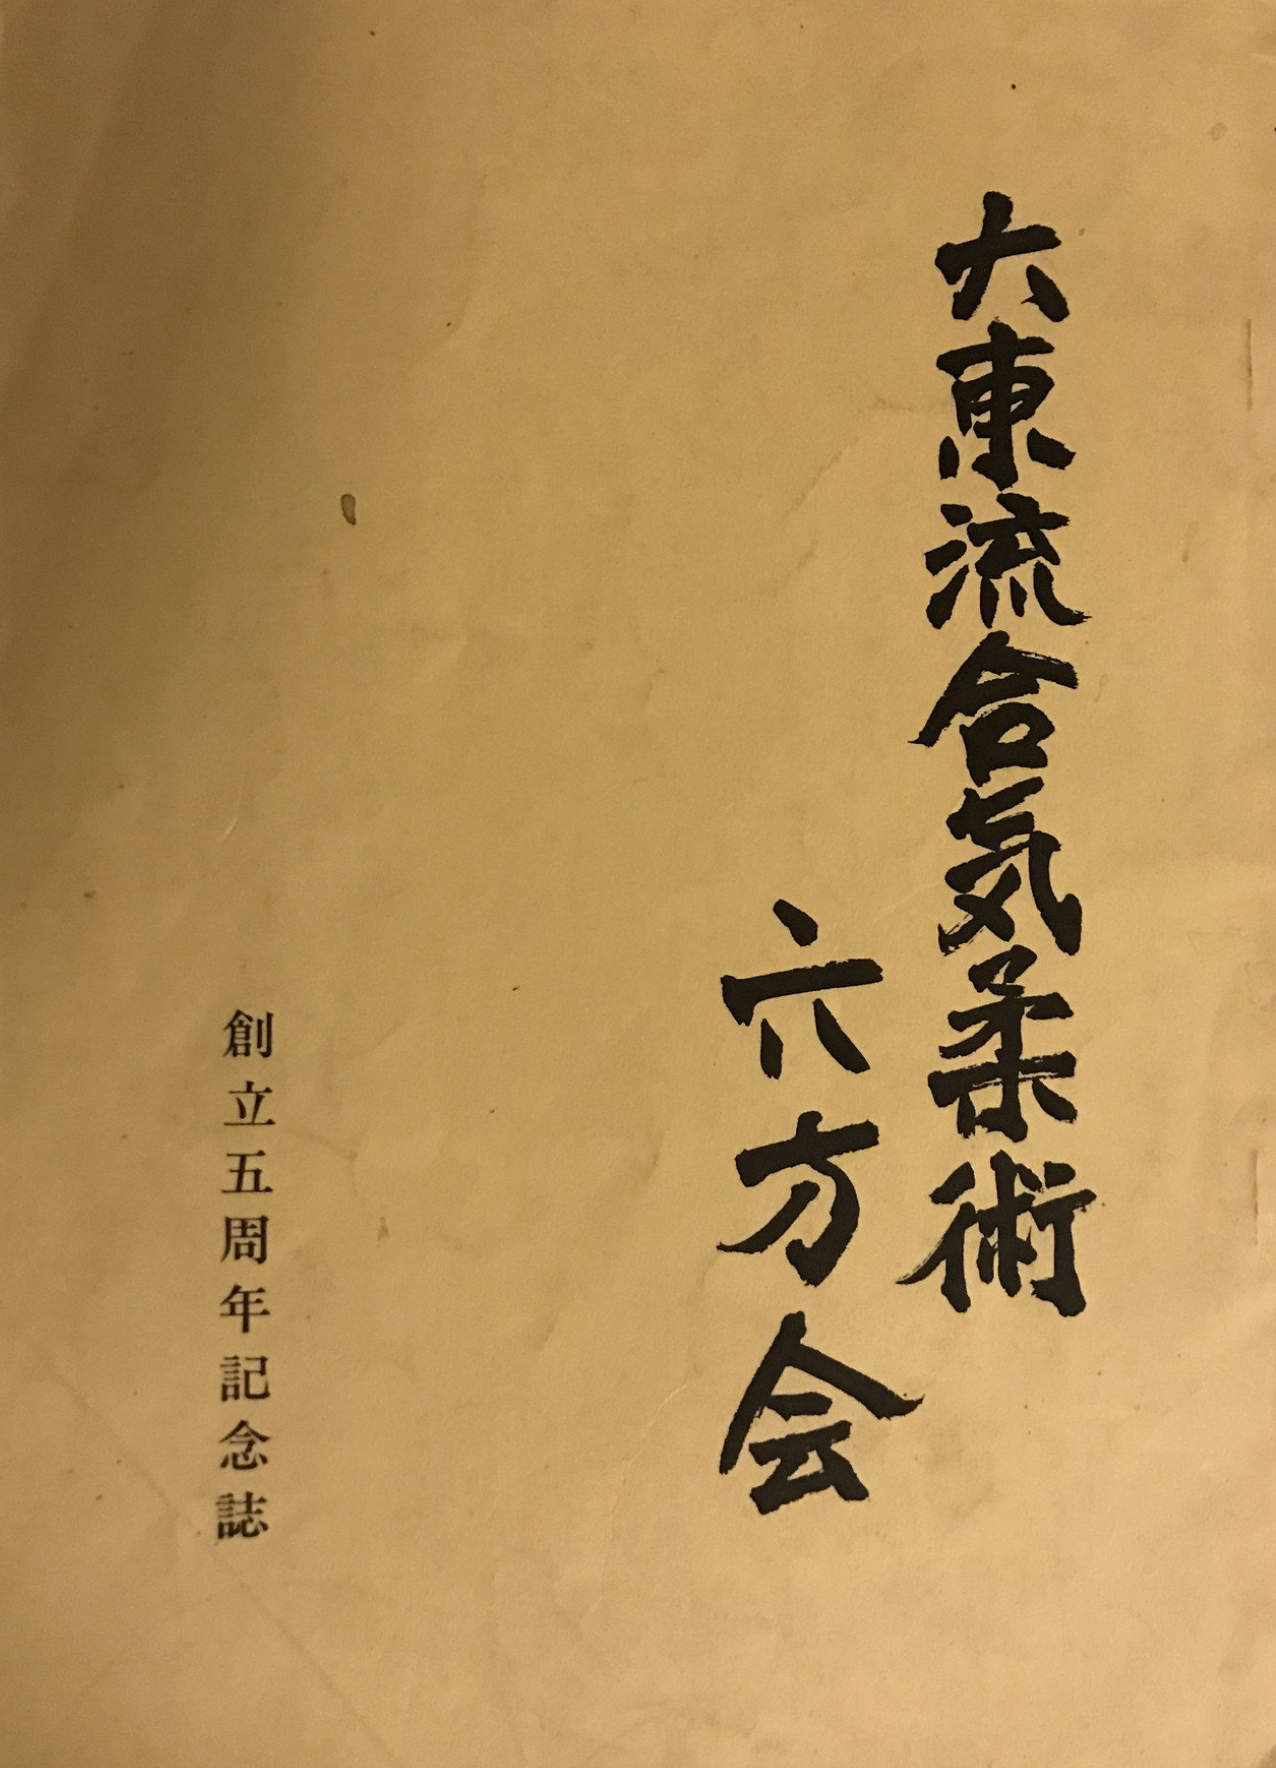 Daito Ryu Aikijujutsu Roppokai 5 Year Anniv Book Seigo Okamoto (Preowned) - Budovideos Inc